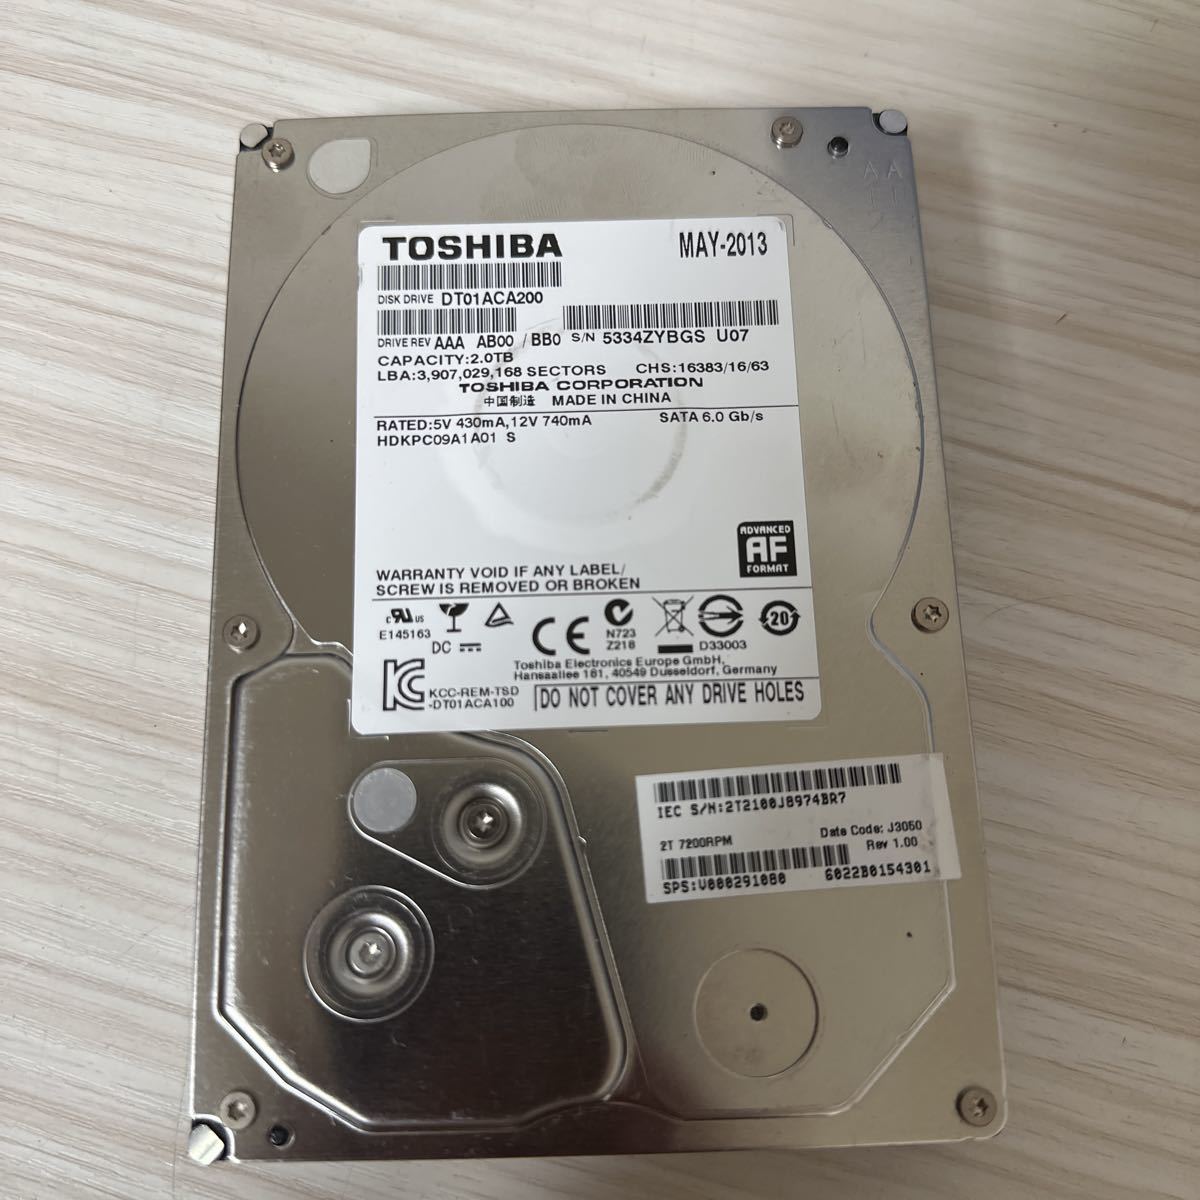 X82:【動作保証/使用0時間】TOSHIBA 2TB HDD DT01ACA200 3.5インチHDD